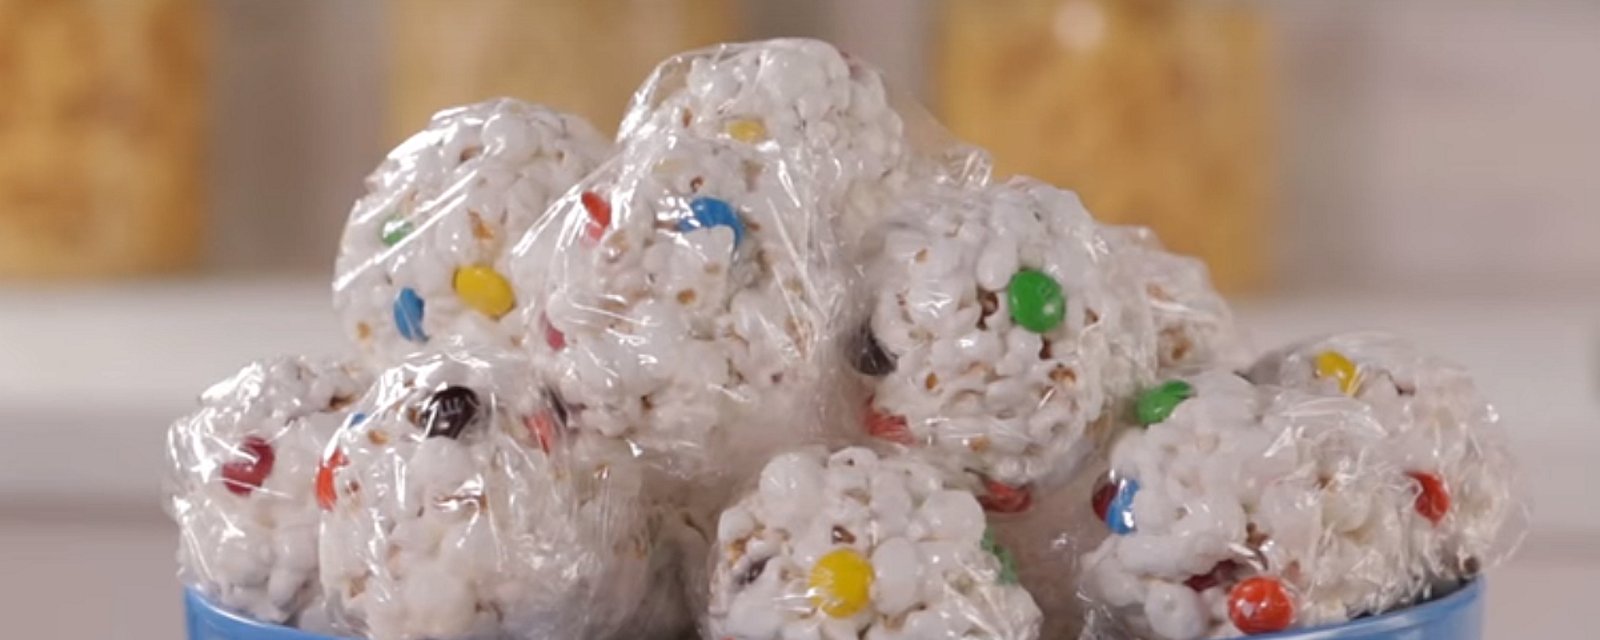 Boules de popcorn décorées de bonbons pour petits et grands enfants